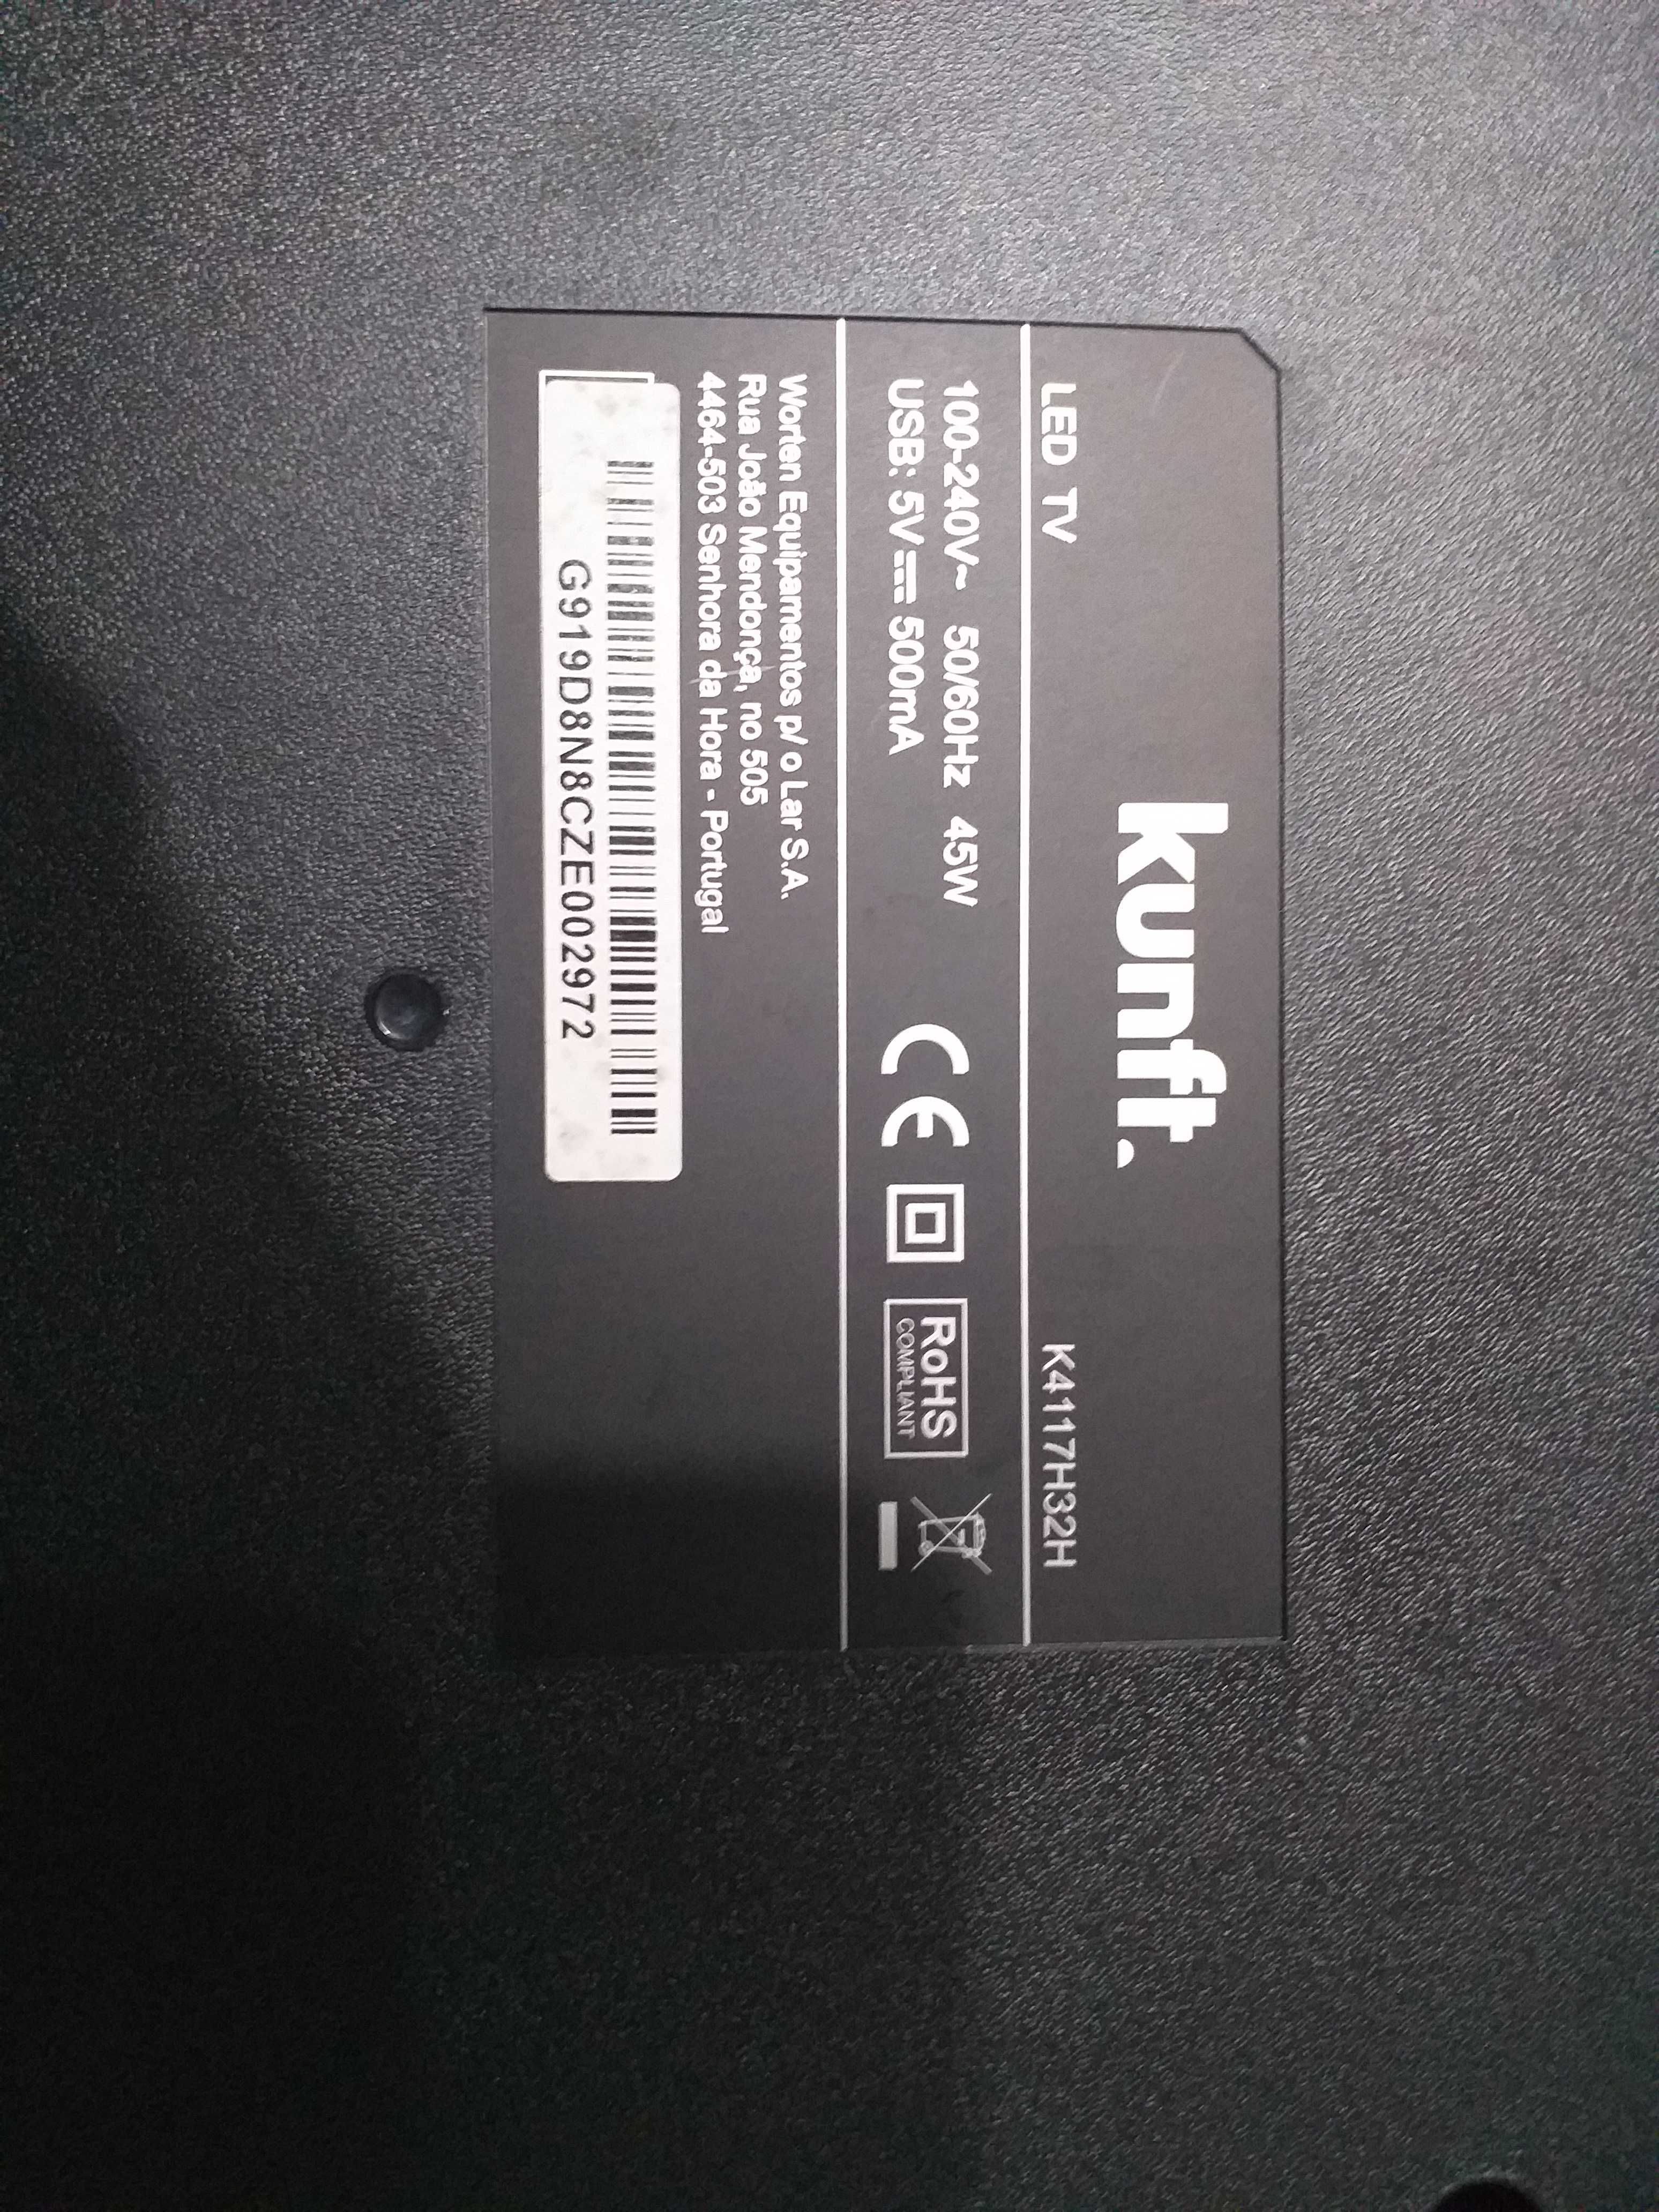 KUNFT  tv led K4117H32H display defect